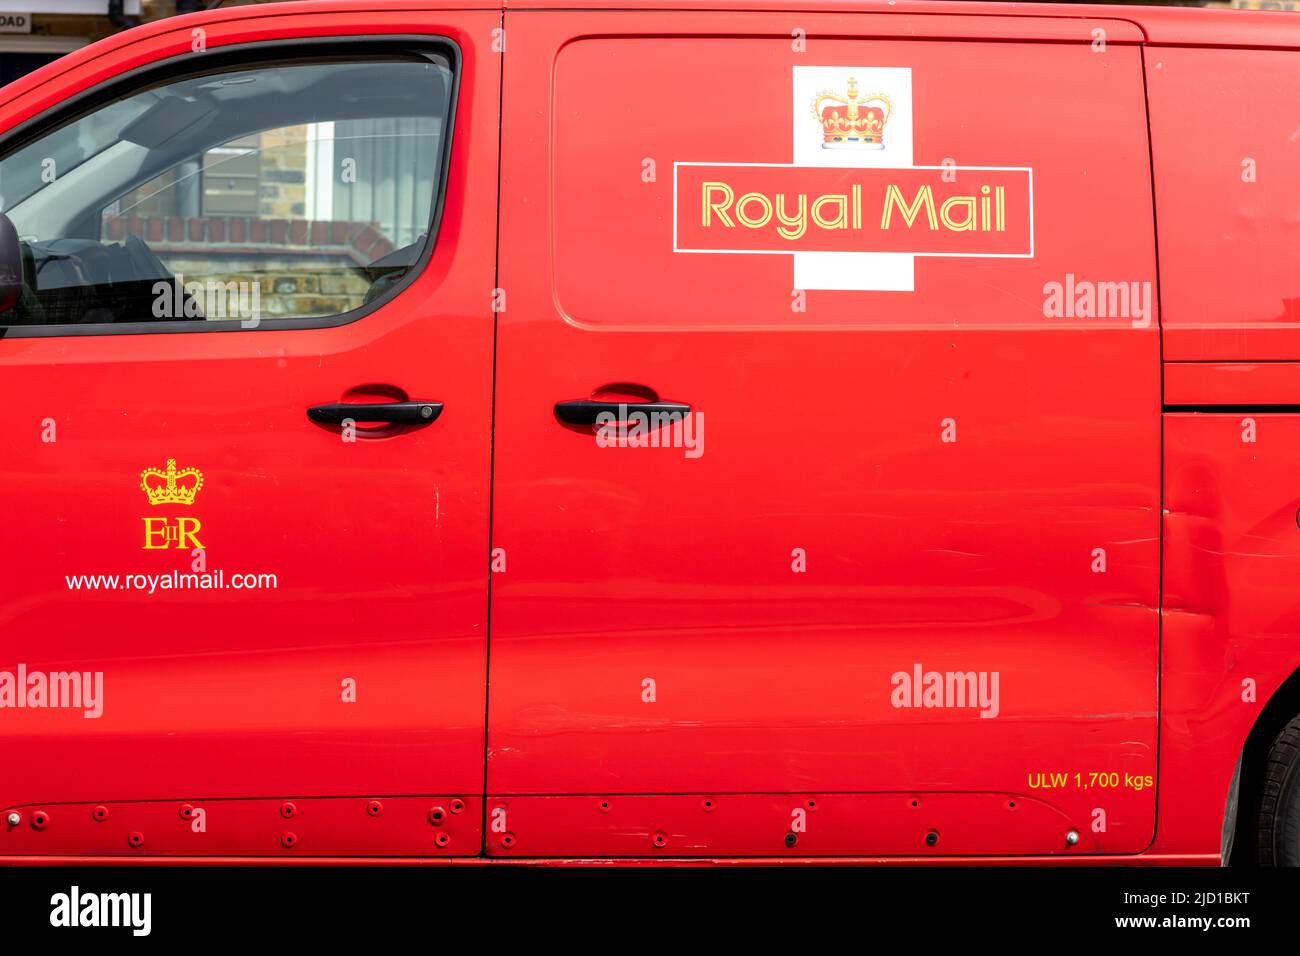 Londres. ROYAUME-UNI- 06.16.2022. Les marquages sur le côté d'un camion de livraison Royal Mail montrant le nom et le logo de l'entreprise. Banque D'Images